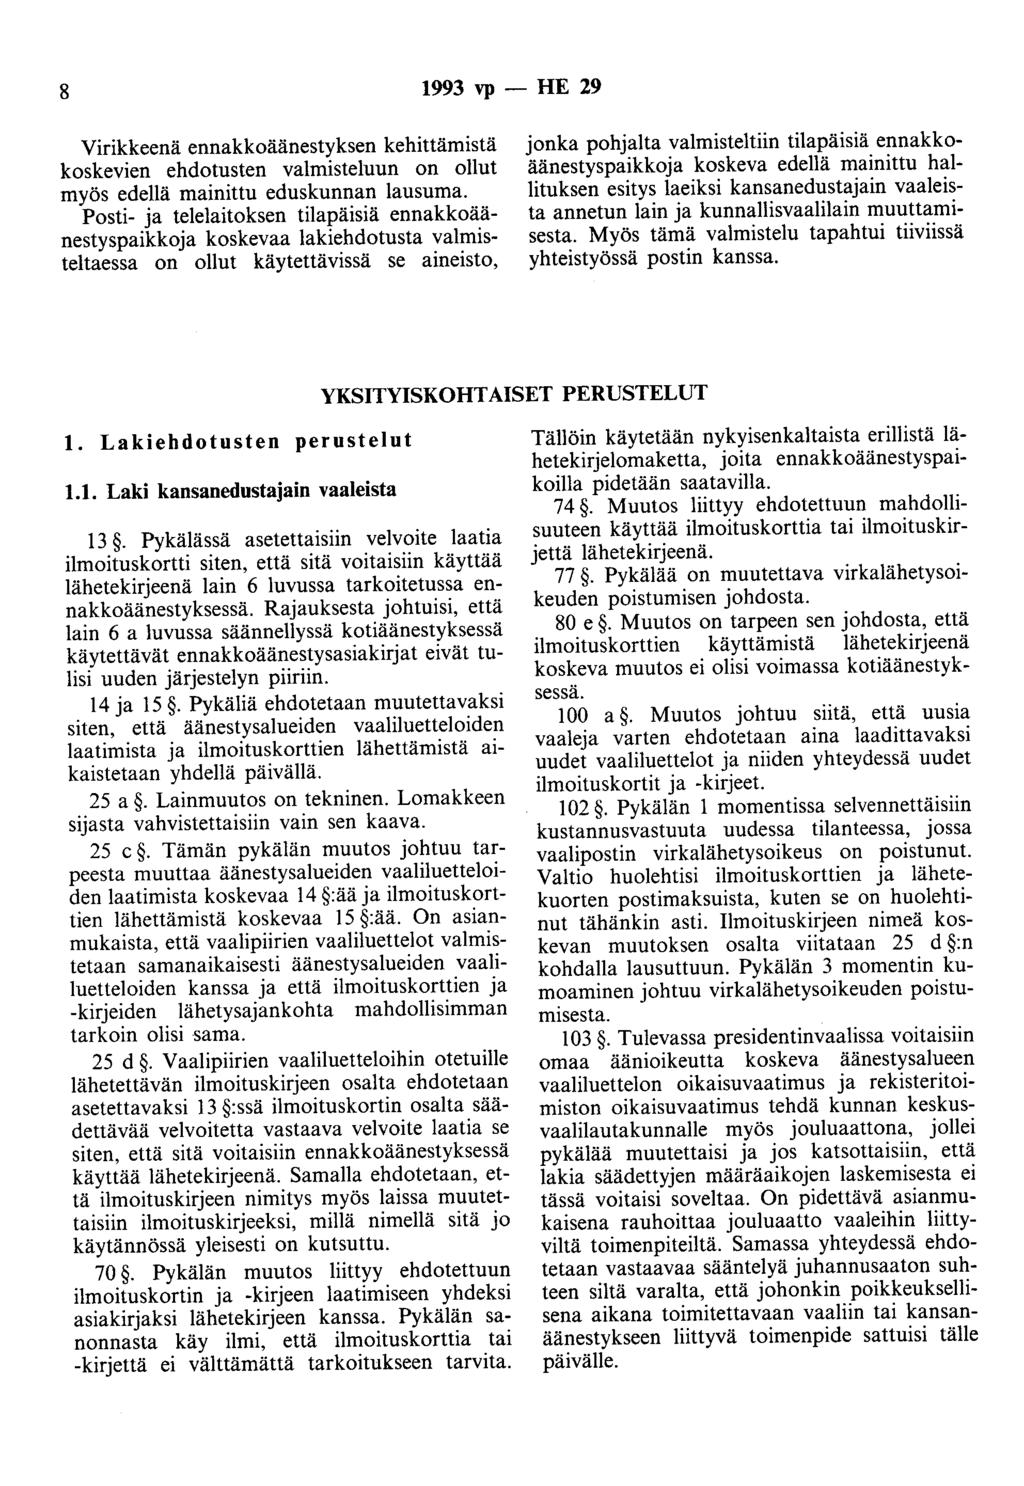 8 1993 vp - HE 29 Virikkeenä ennakkoäänestyksen kehittämistä koskevien ehdotusten valmisteluun on ollut myös edellä mainittu eduskunnan lausuma.